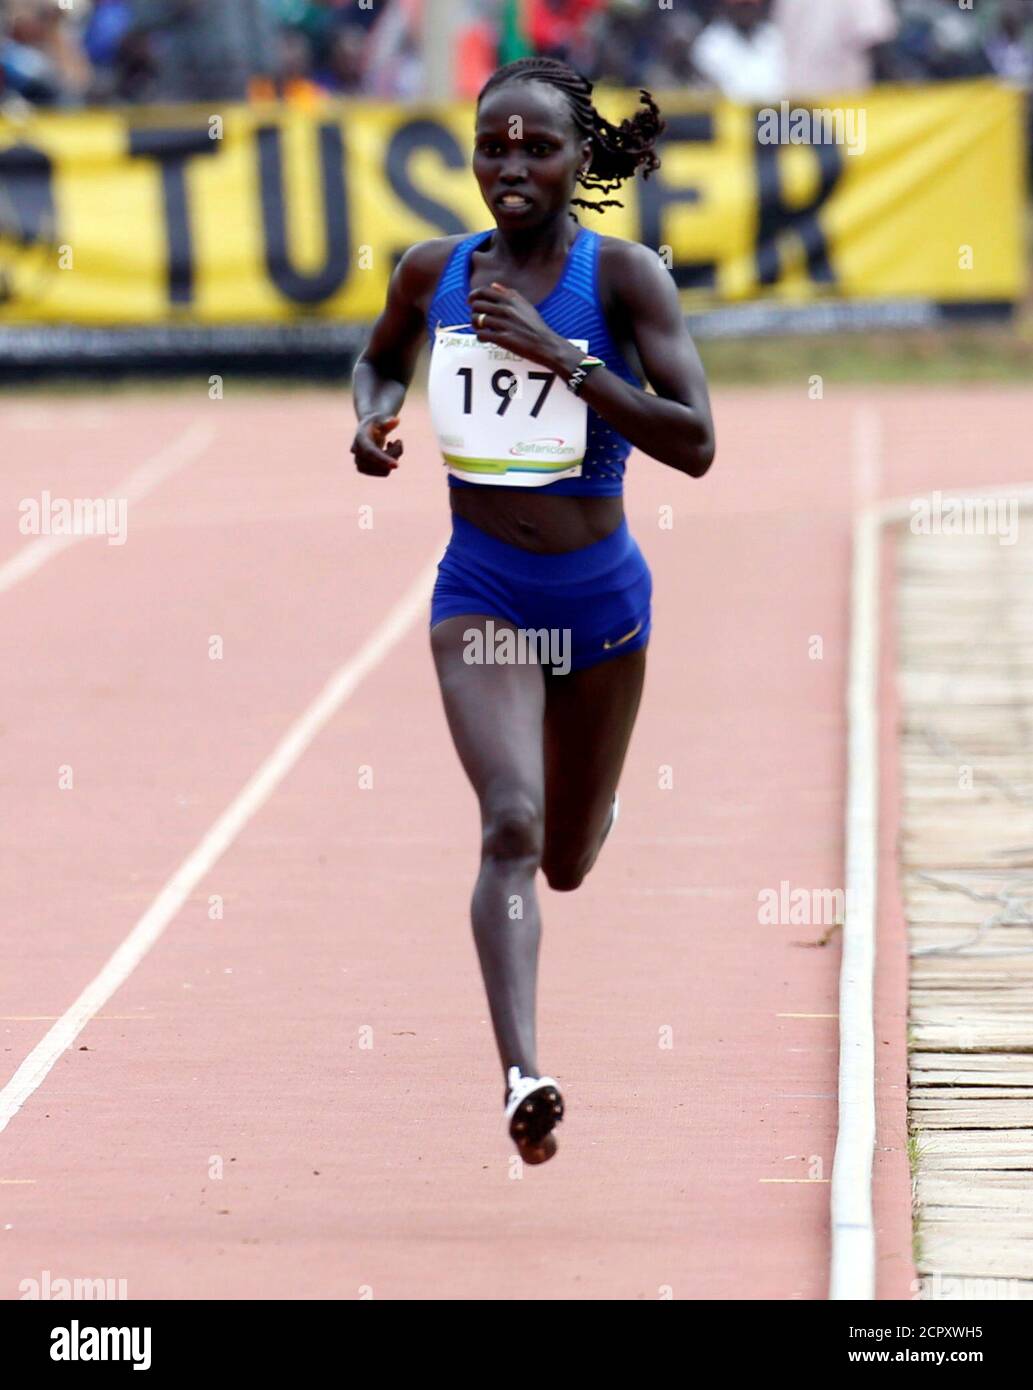 El atleta keniano Vivian Cheruiyot se acerca a la línea de meta durante las pruebas de los Juegos Olímpicos de Río 2016 en la ciudad de Eldoret, en el valle del Rift norte de Kenia, el 30 de junio de 2016. REUTERS/Thomas Mukoya Foto de stock